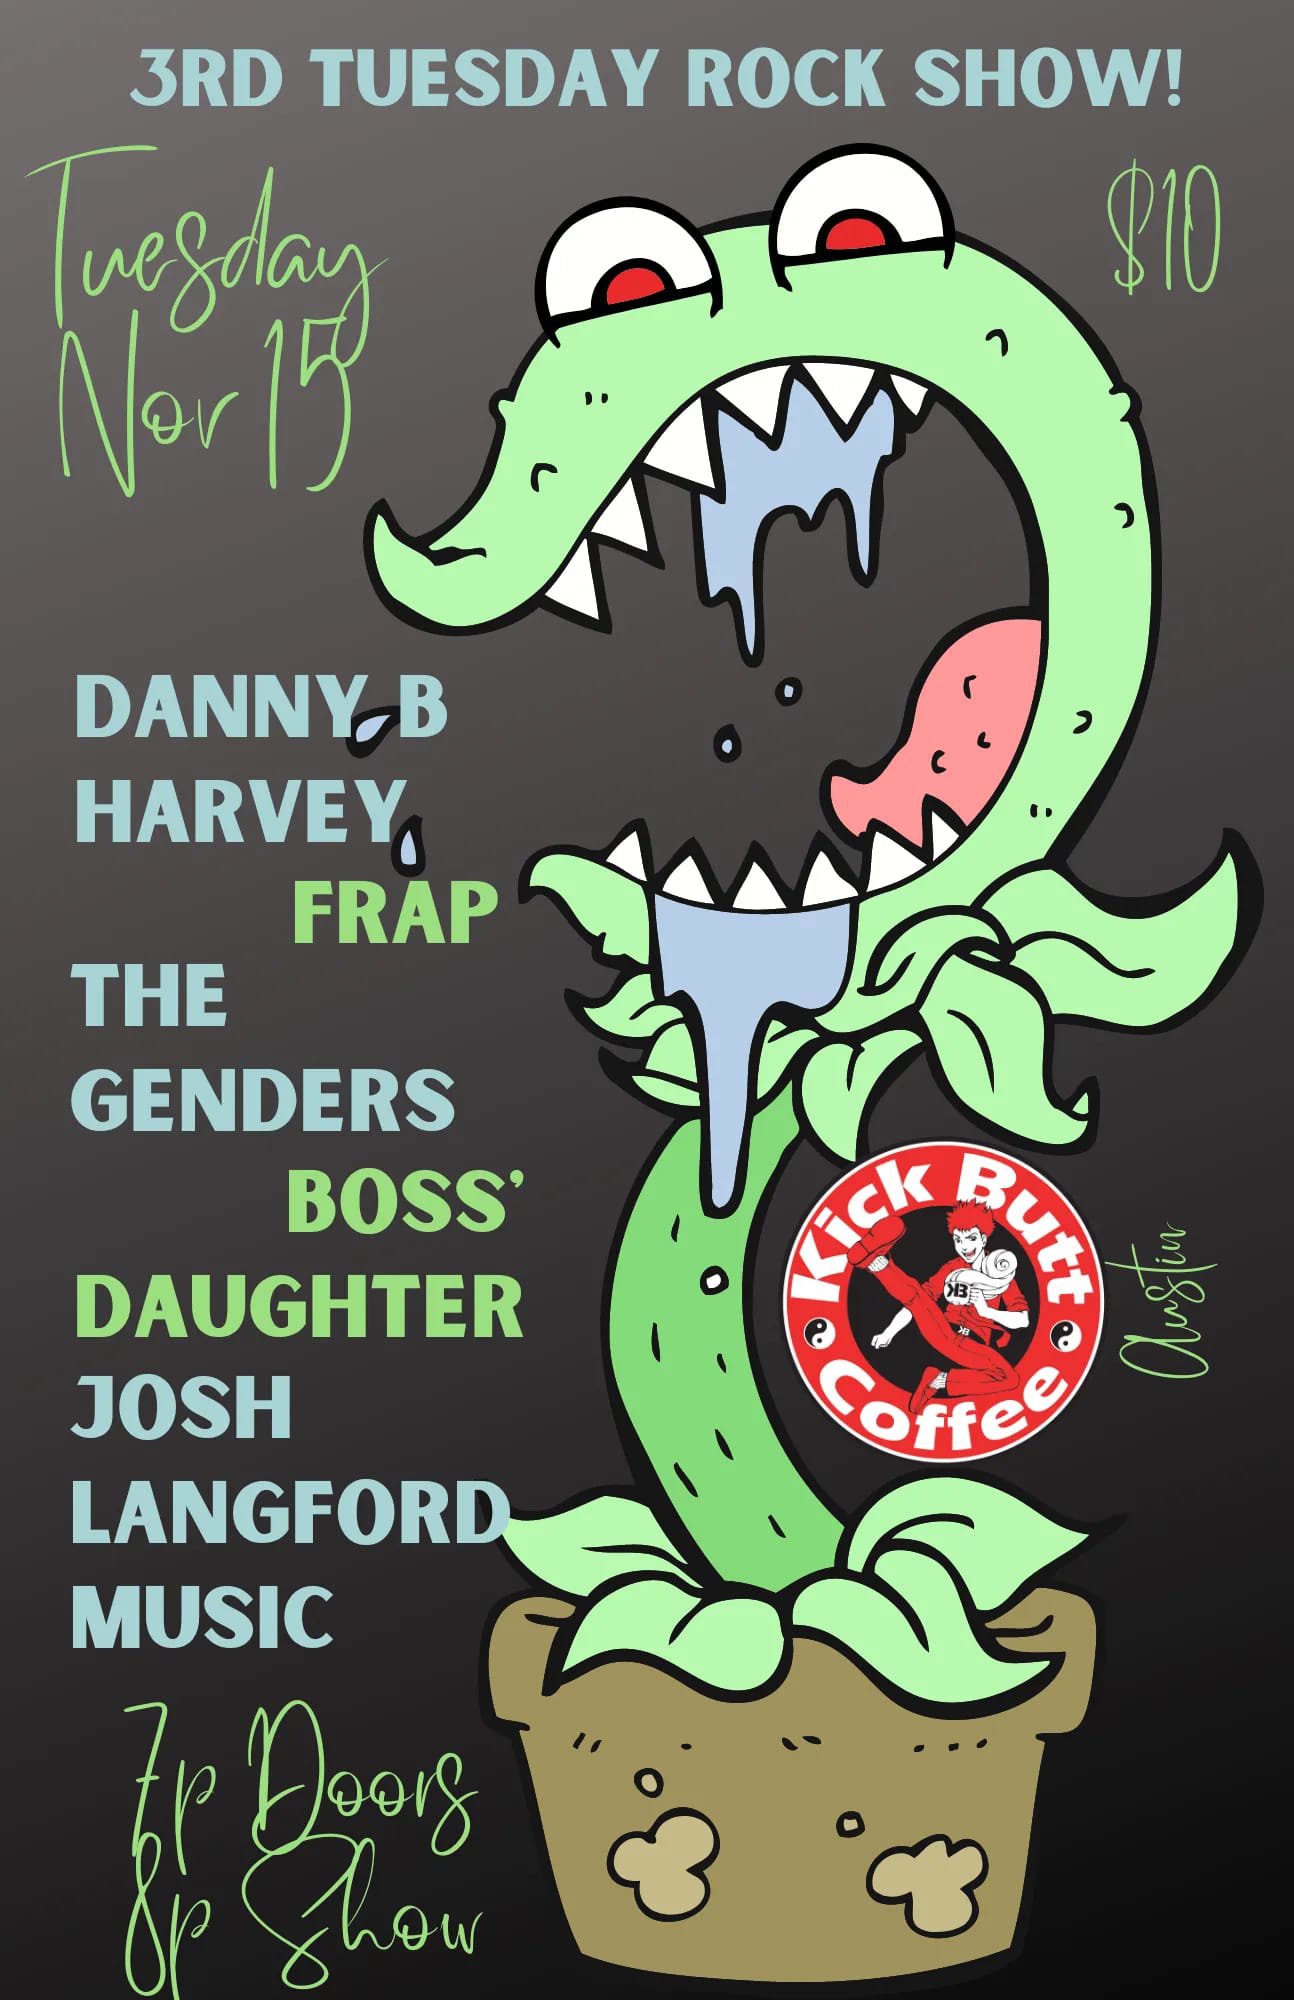 Danny B Harvey and Frap, The Genders, Boss' Daughter (Reno, NV) and Josh Langford Music